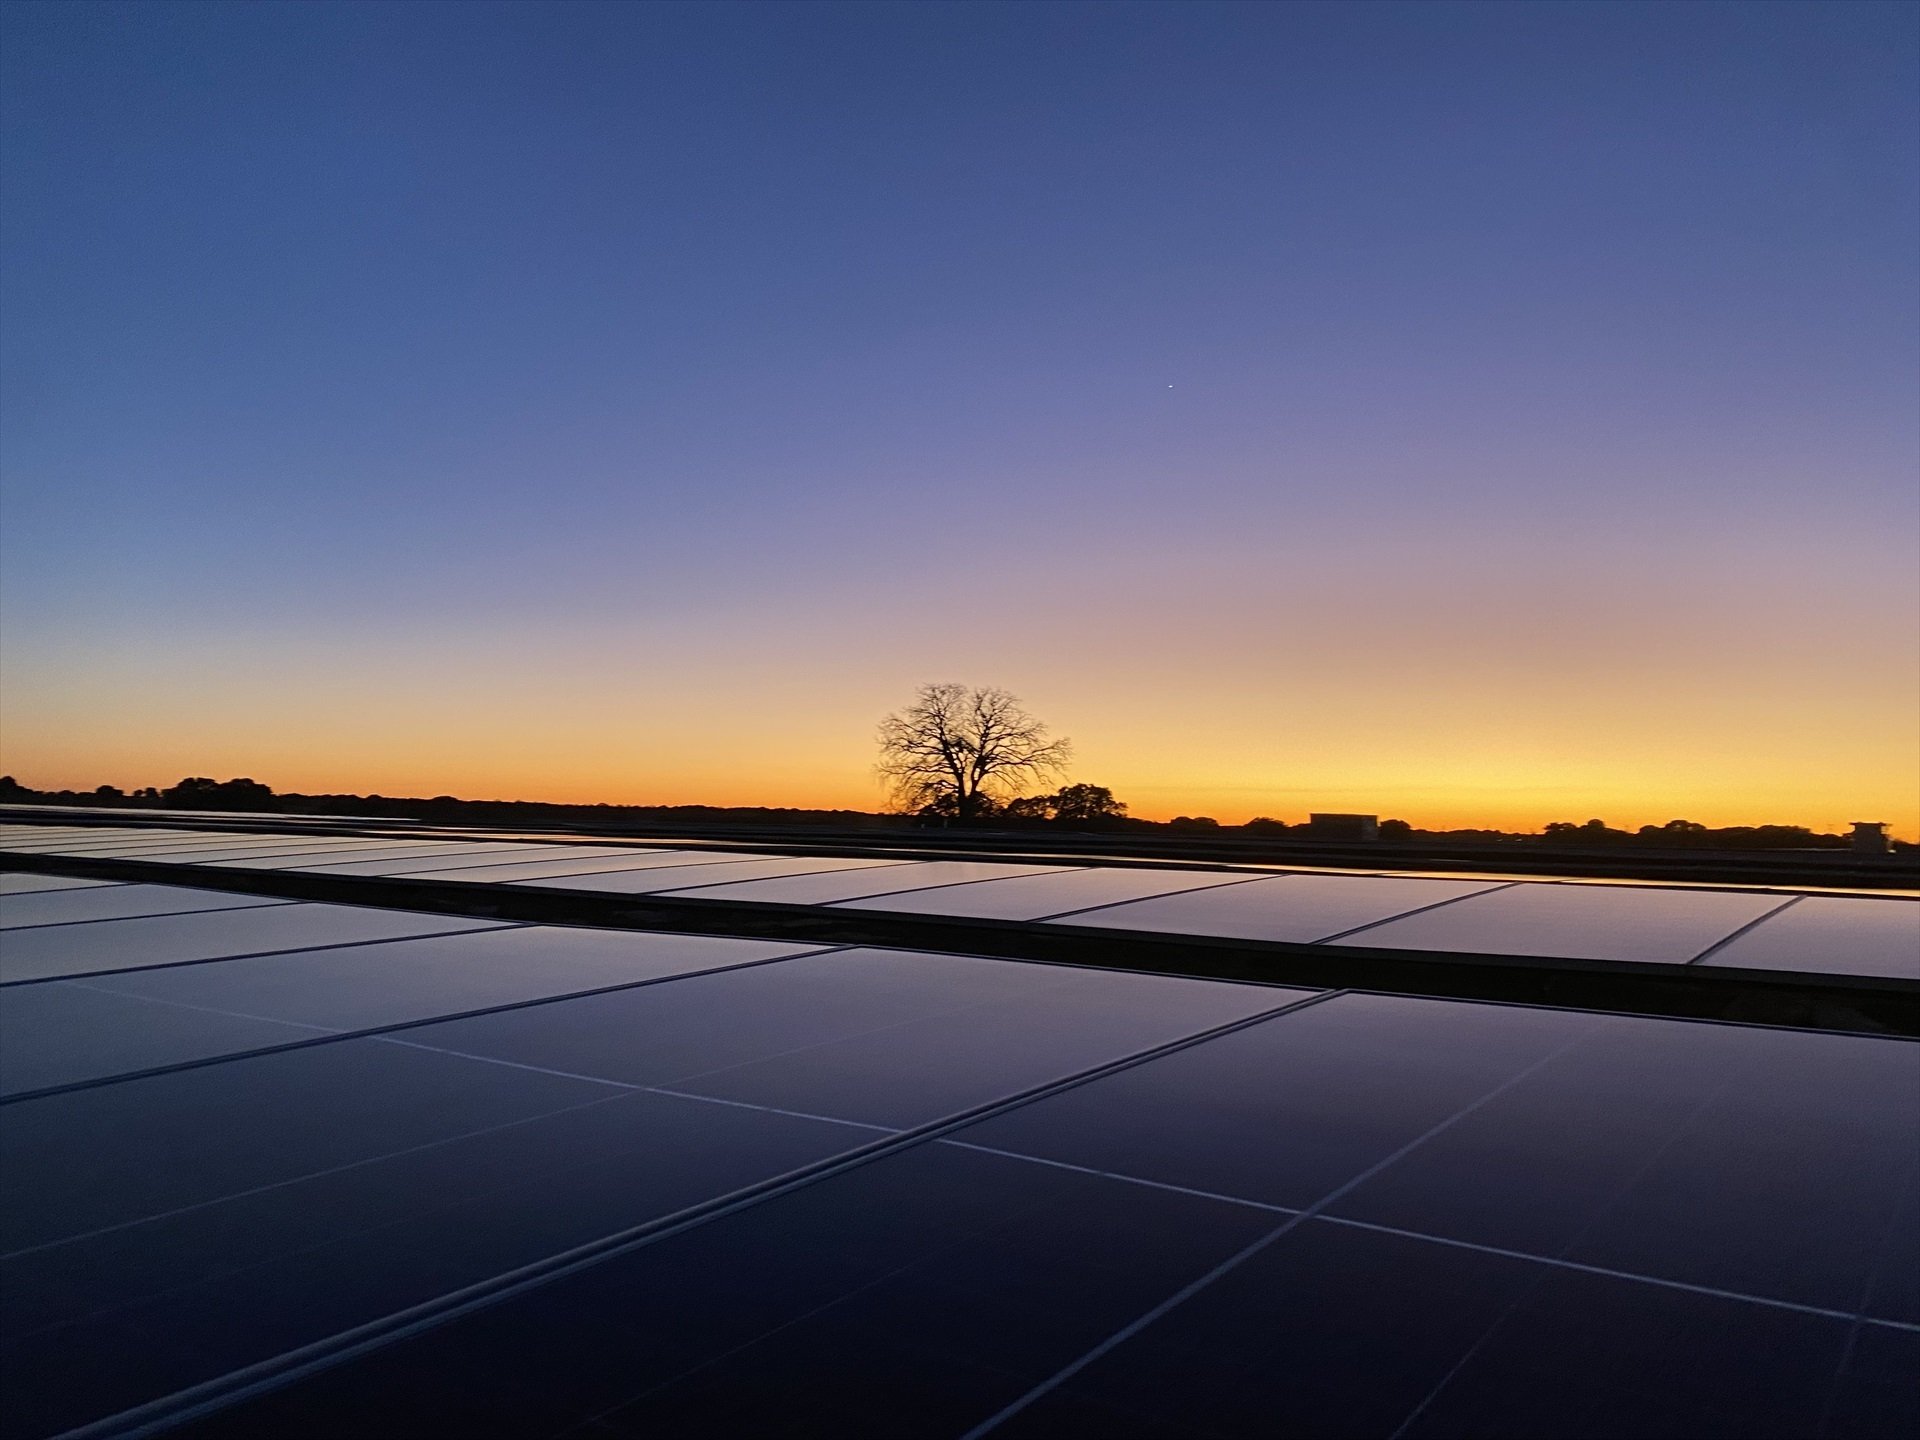 Solaria guanya un 22% més aixecada per les noves plantes fotovoltaiques